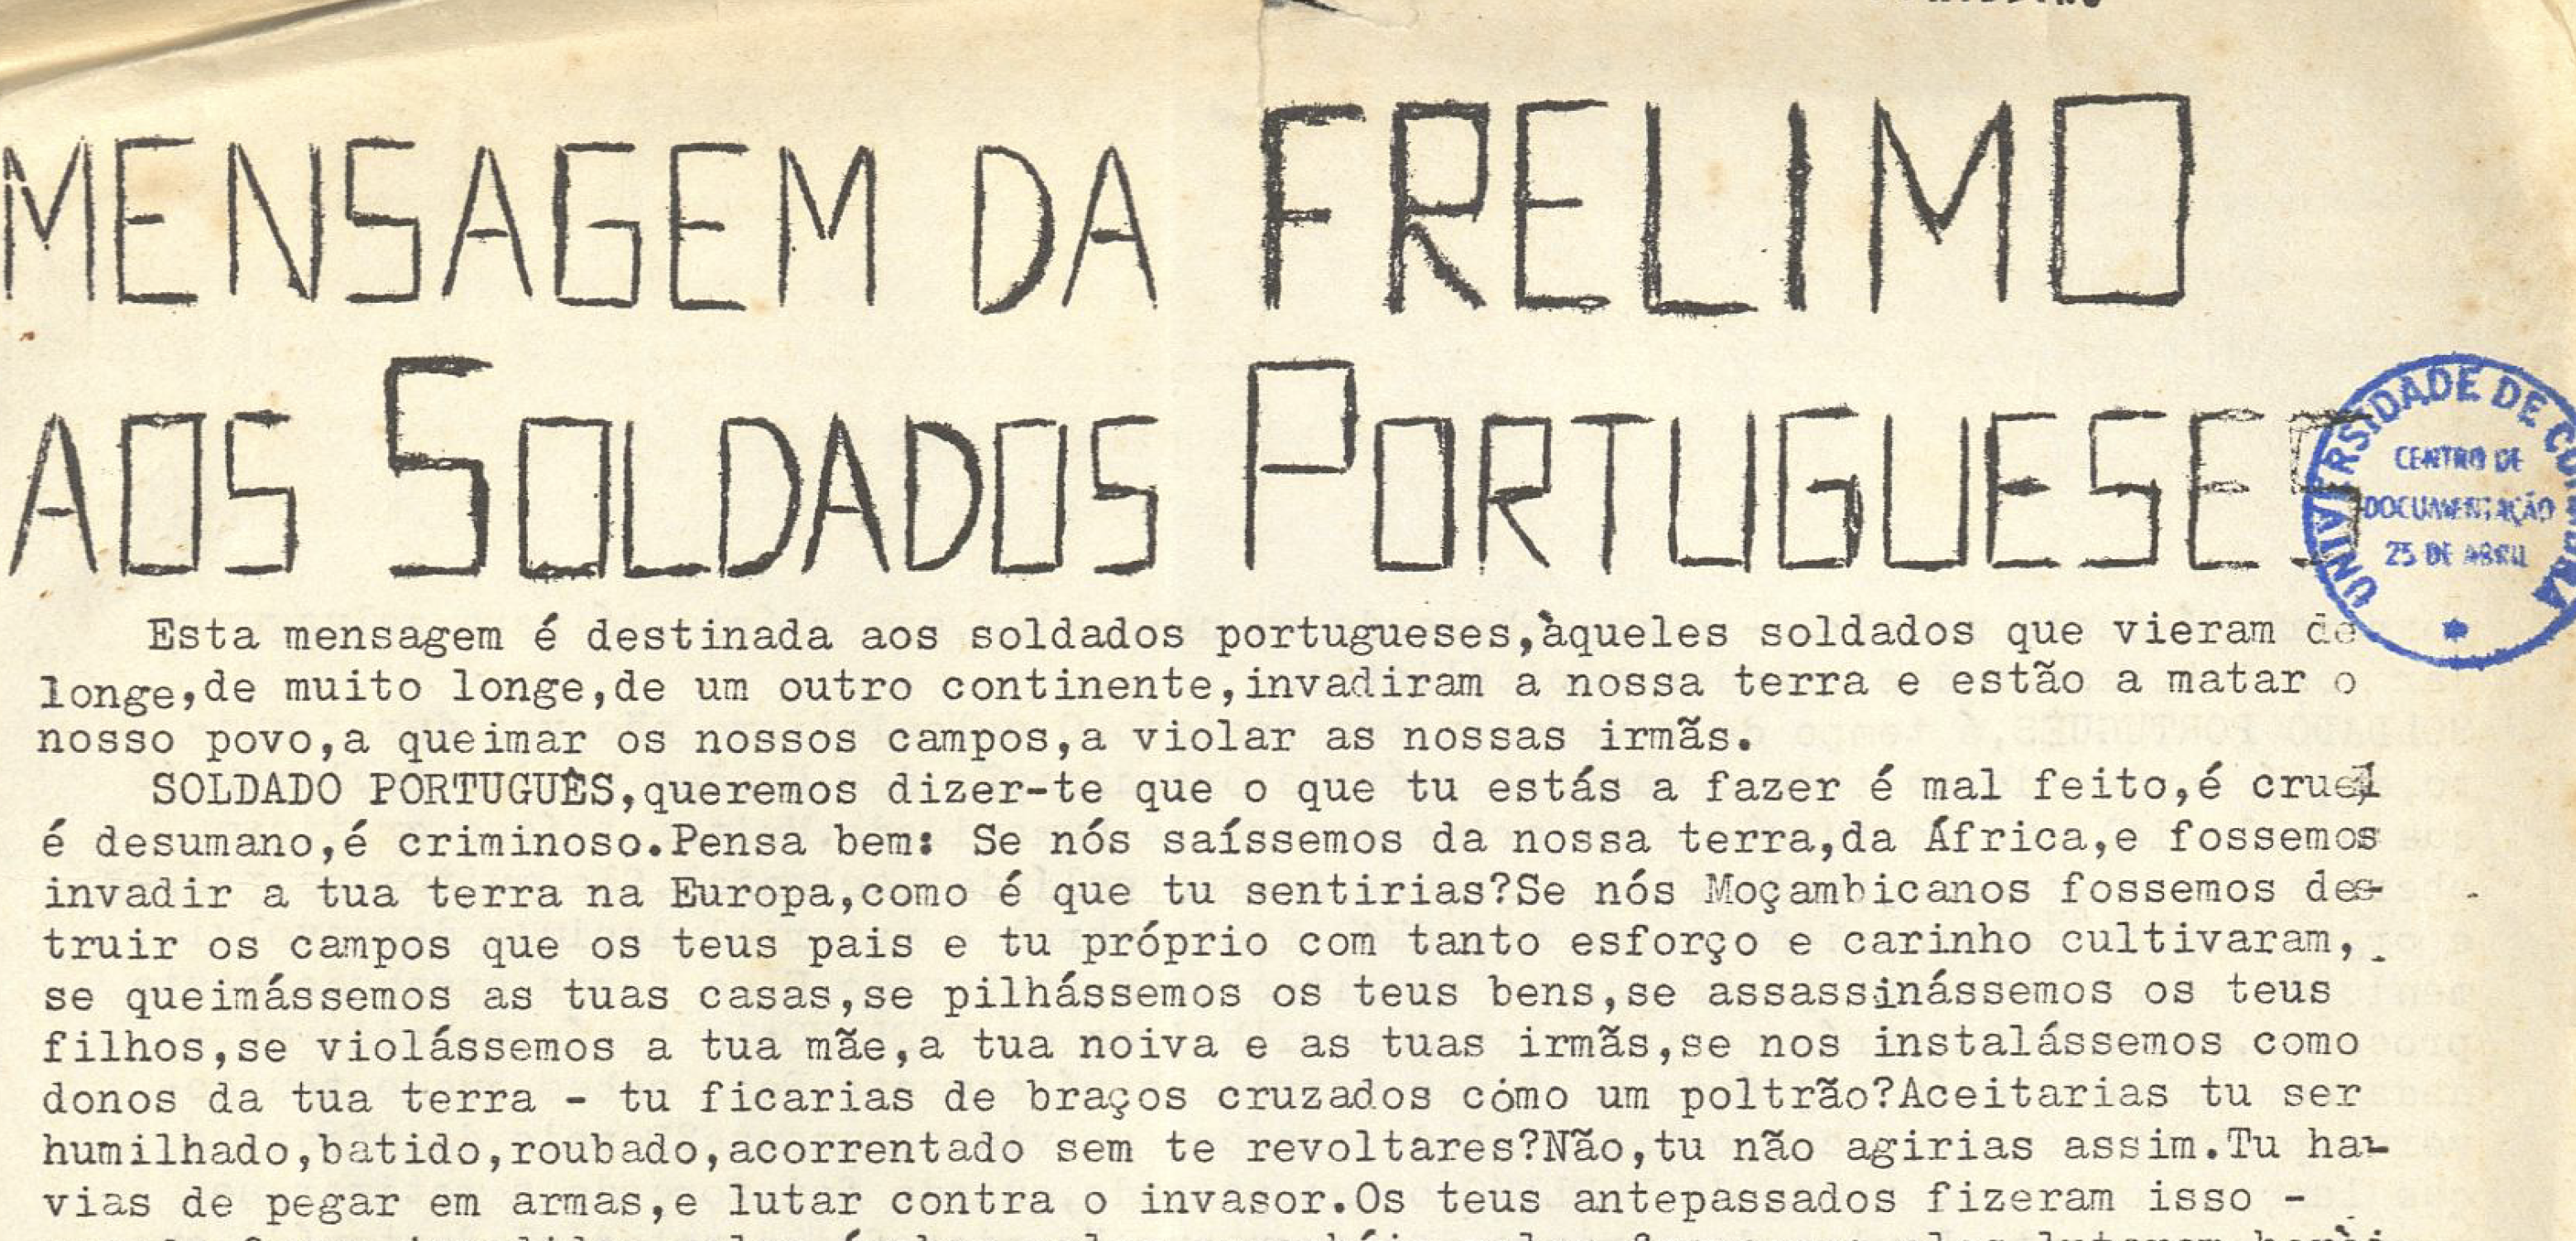 Mensagem da FRELIMO aos soldados portugueses